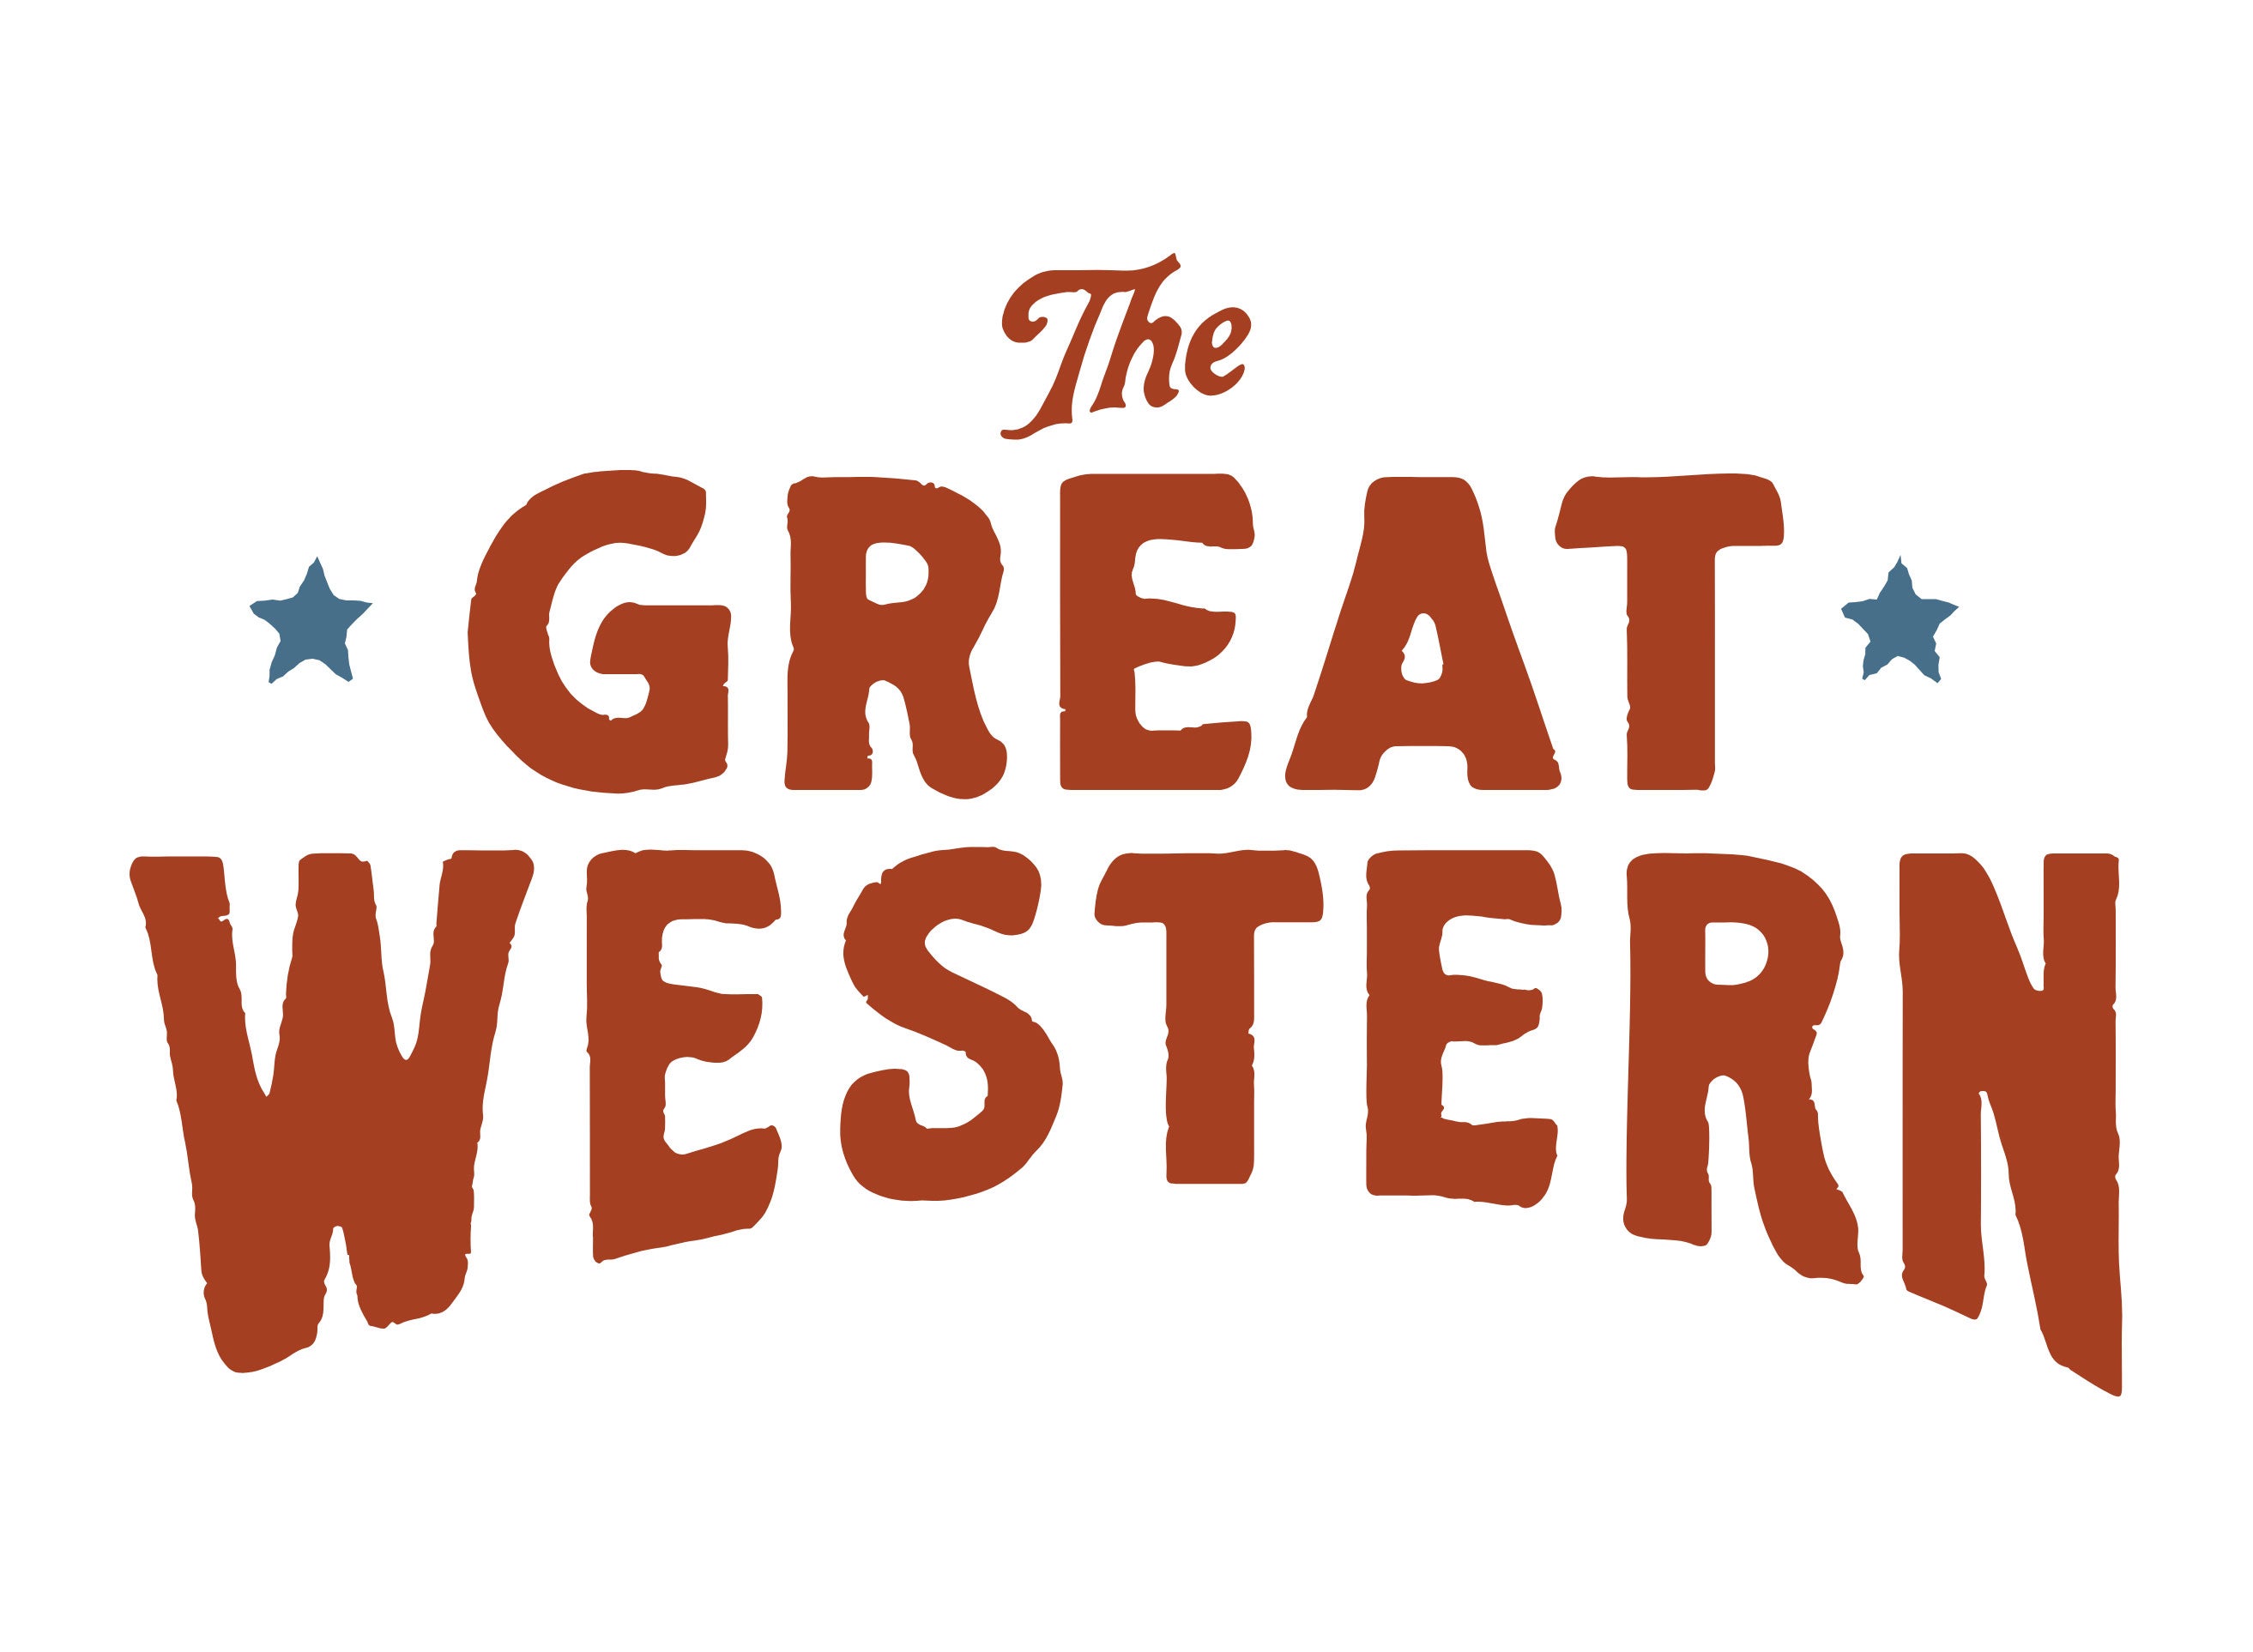 Ryan Bingham's The Great Western presales in Fort Worth